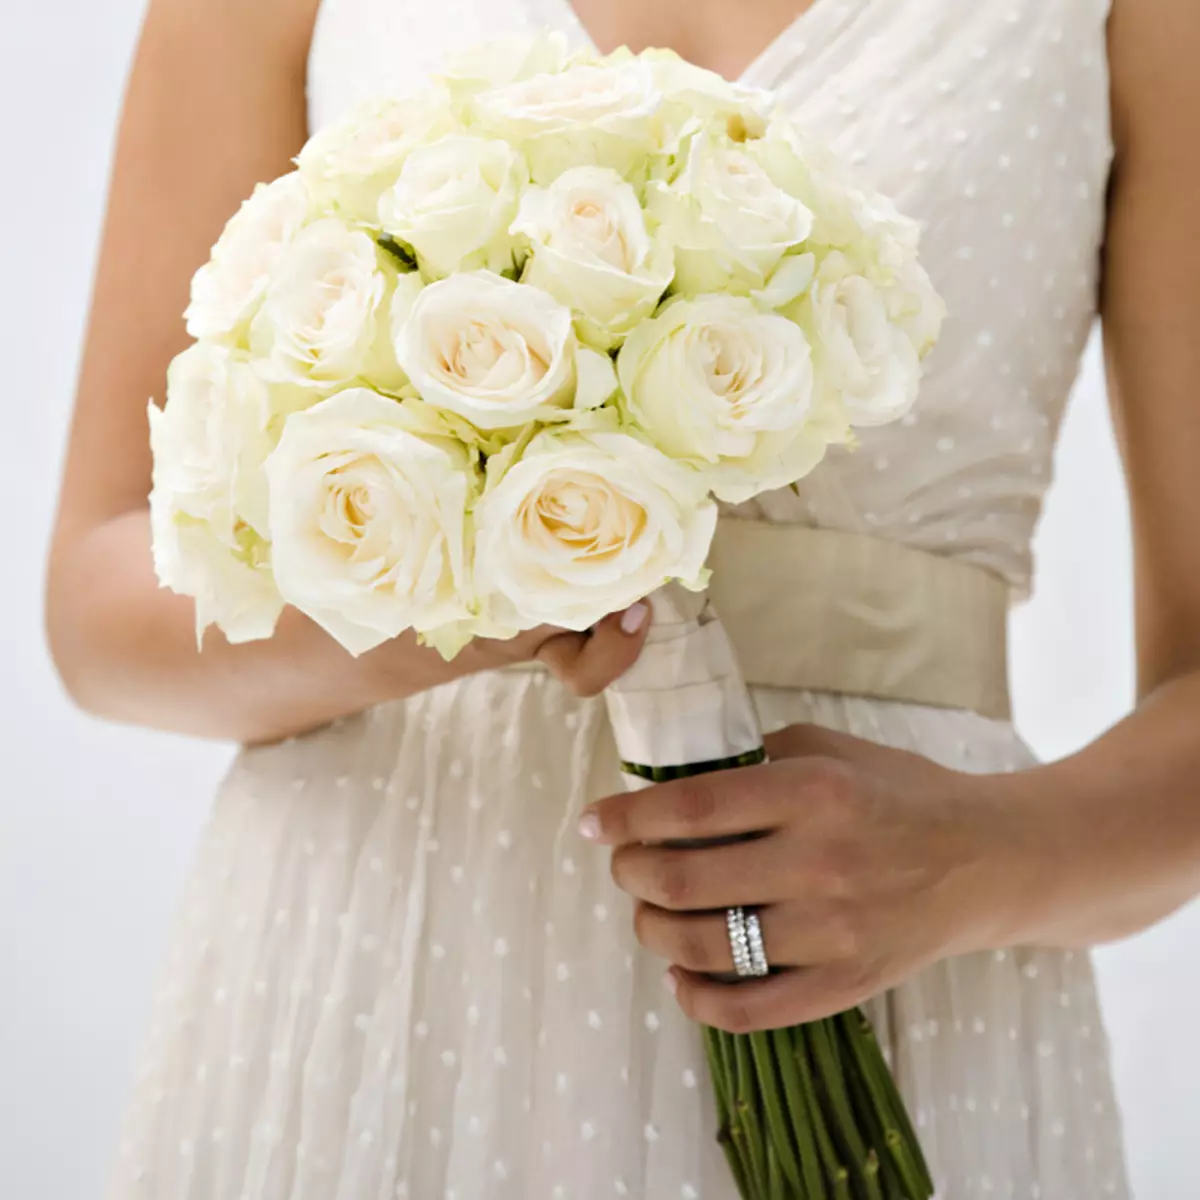 ช่อดอกไม้เจ้าสาวของดอกกุหลาบ (74 รูป): องค์ประกอบงานแต่งงานที่ทำจากดอกกุหลาบกับ Eustomas สีขาว, Freesies สีน้ำเงินและ alstromeries สีแดง 8005_48